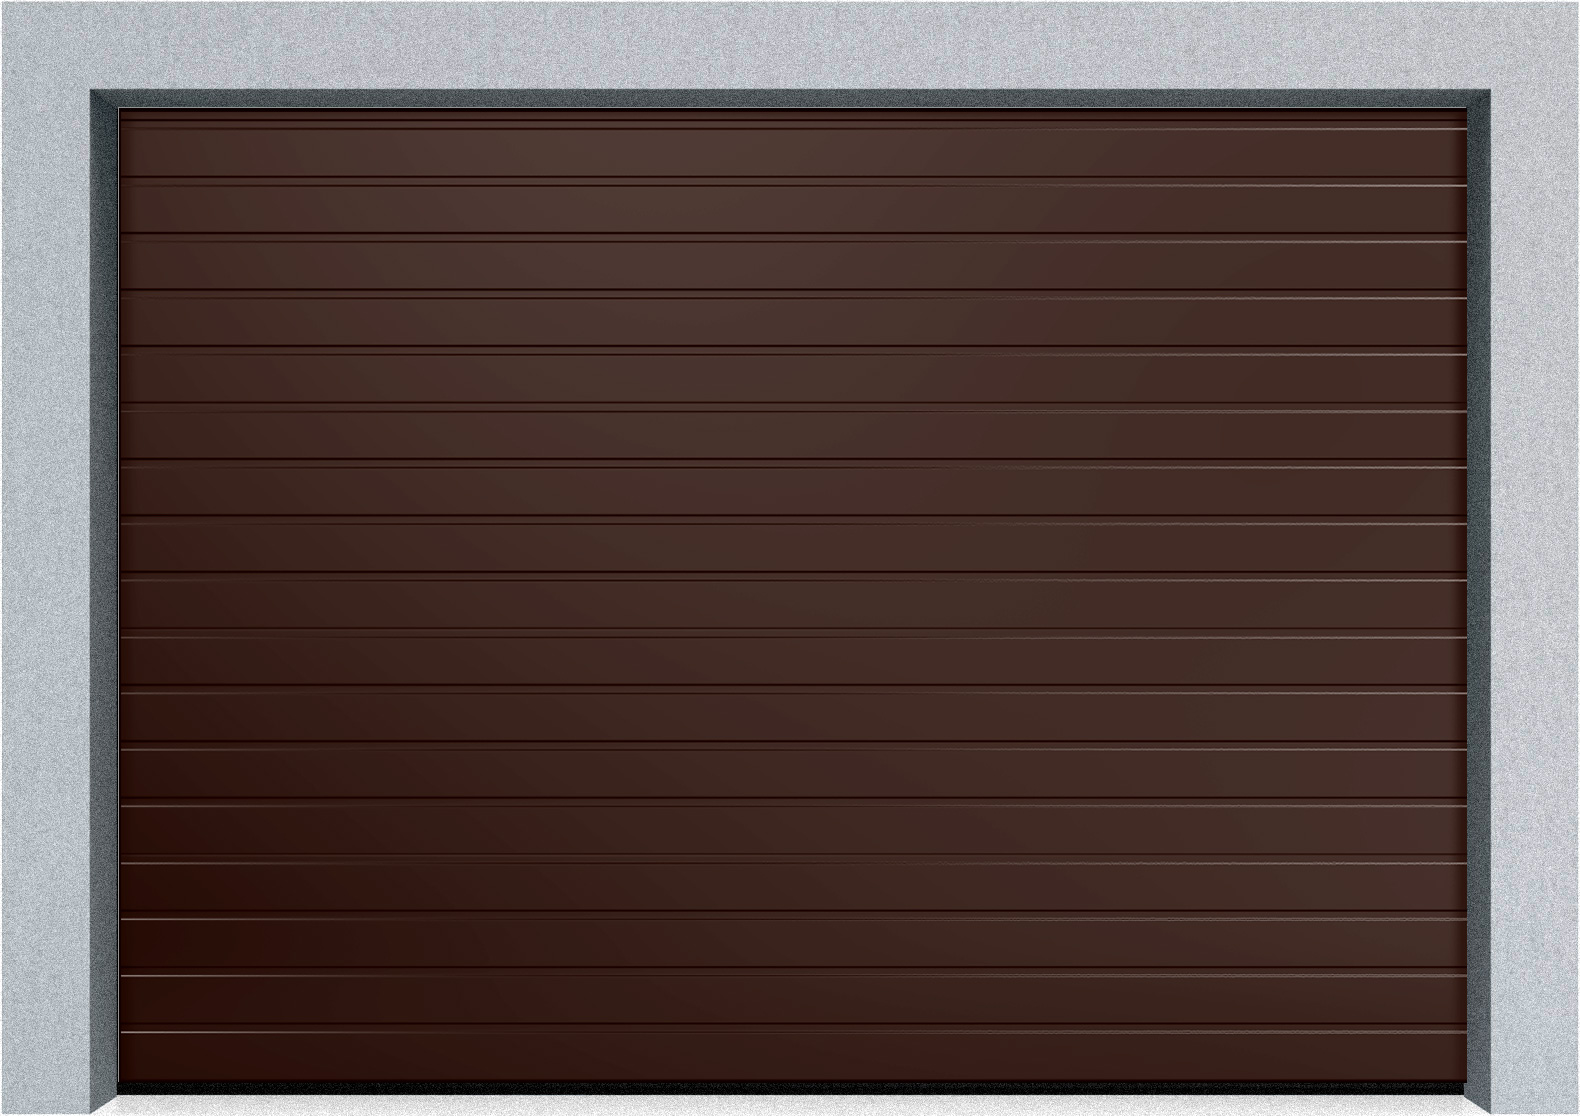  Автоматические секционные гаражные ворота DoorHan RSD02 4500х1800 S-гофр, M-гофр, Микроволна стандартные цвета, фото 3 